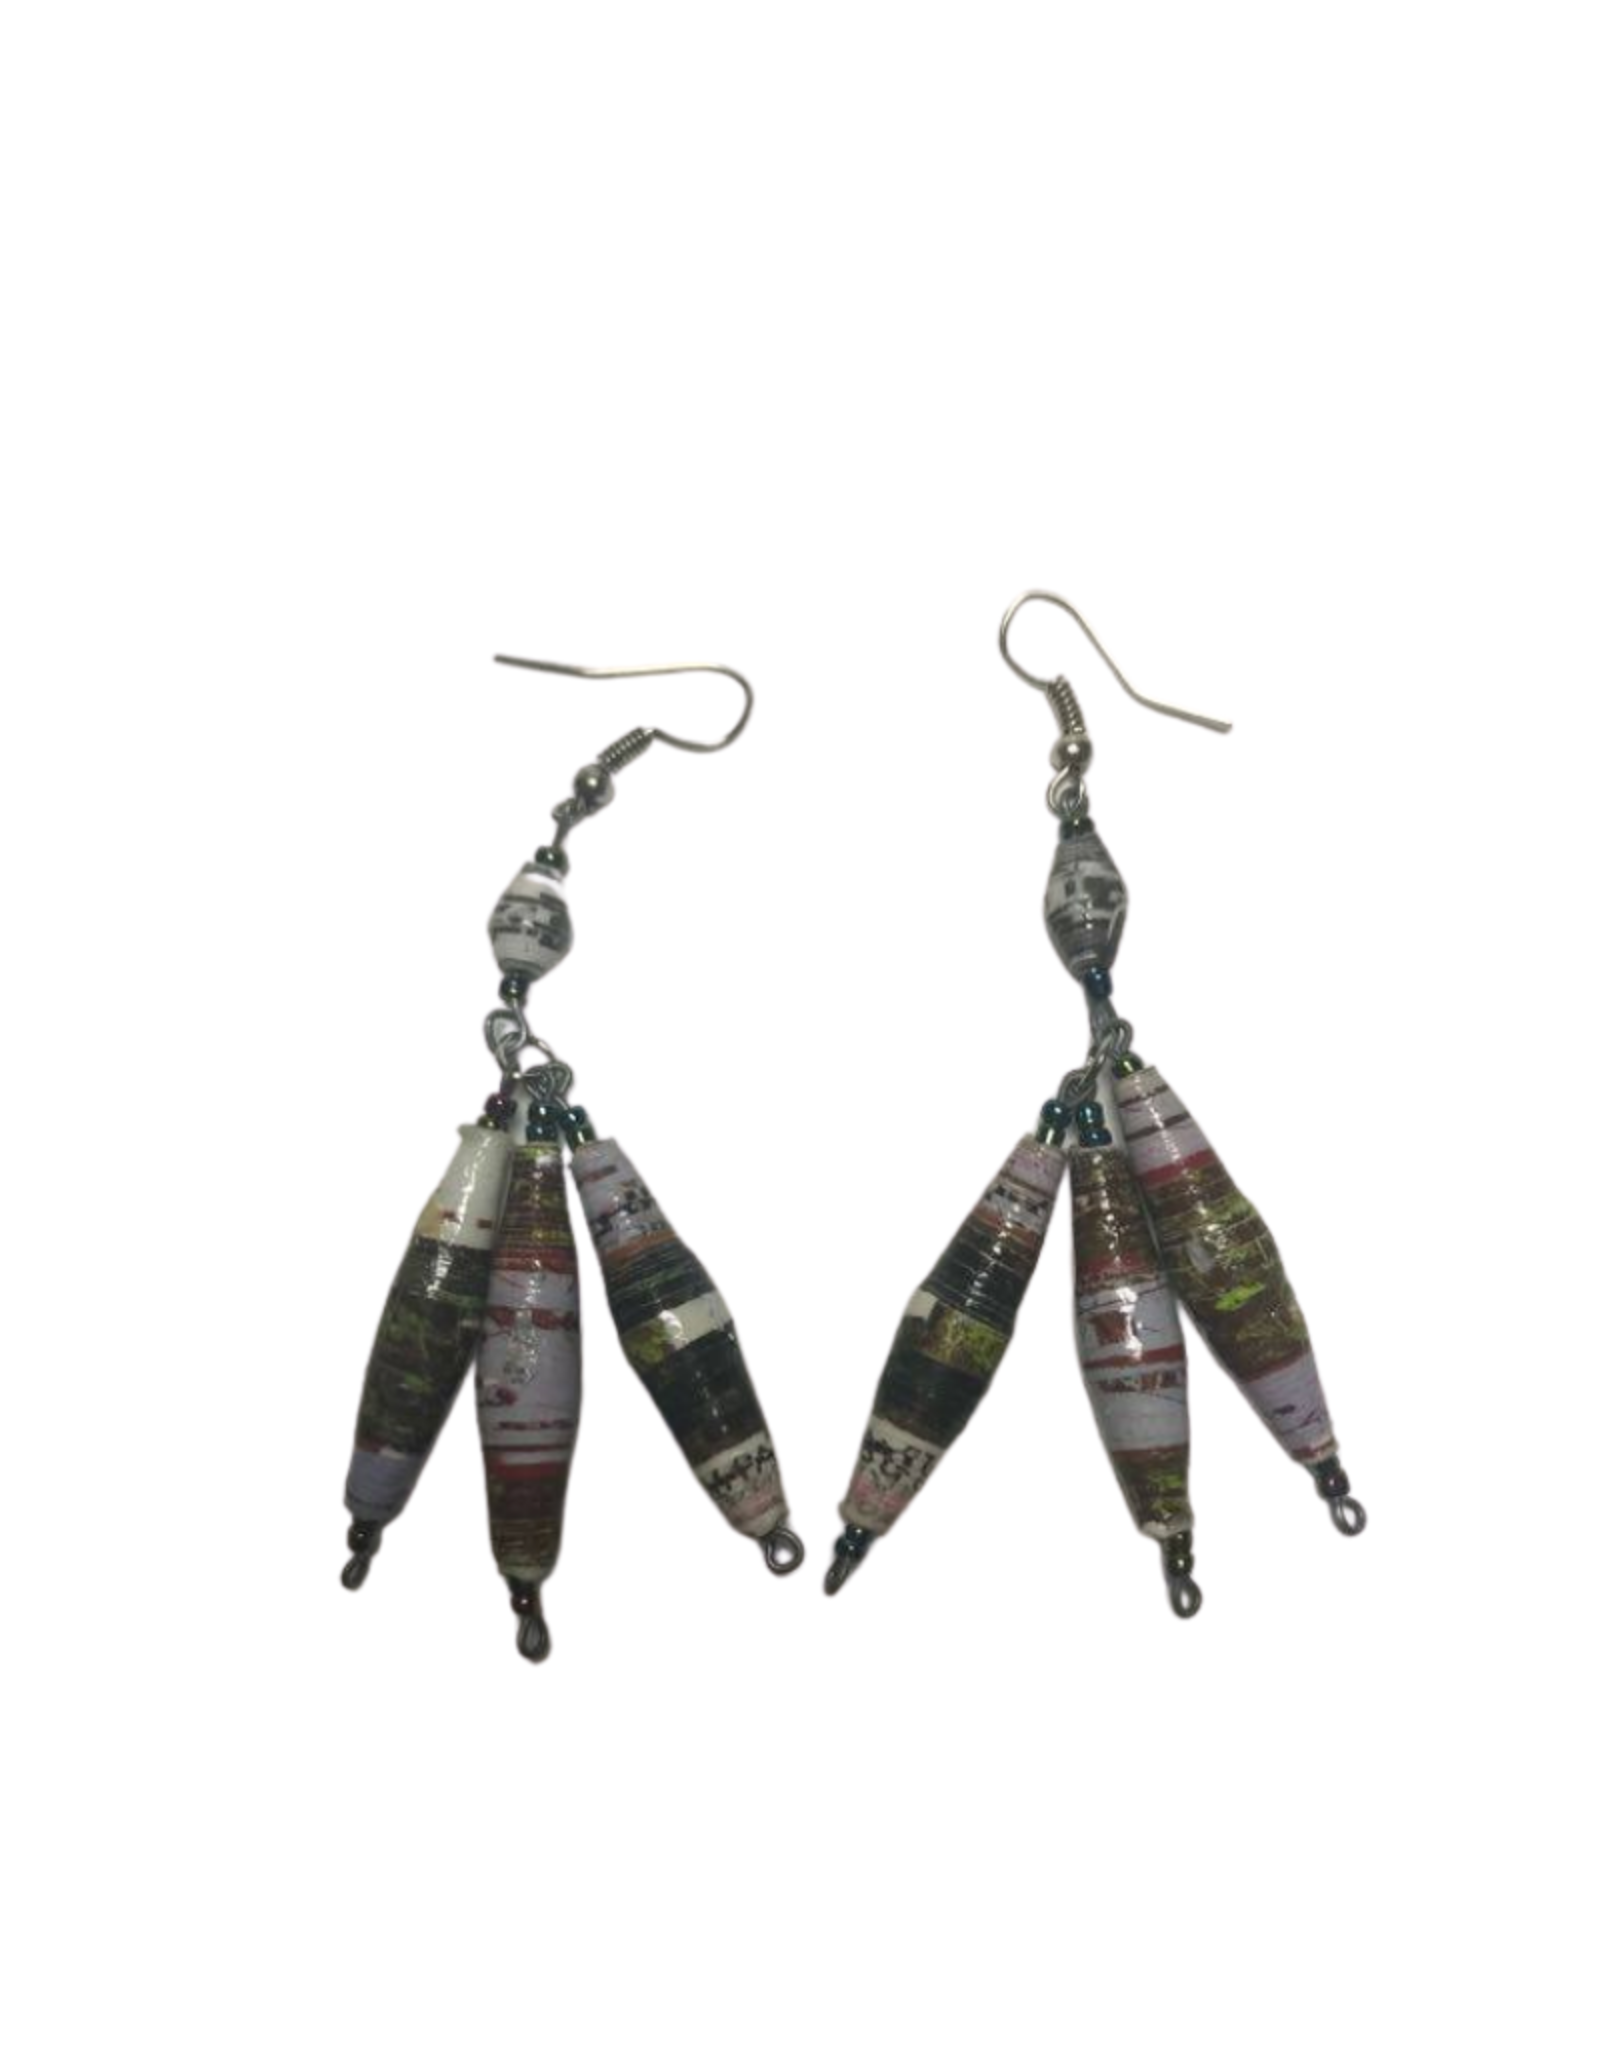 Takataka Coiled Paper Earrings (Strands of Three) - Kenya